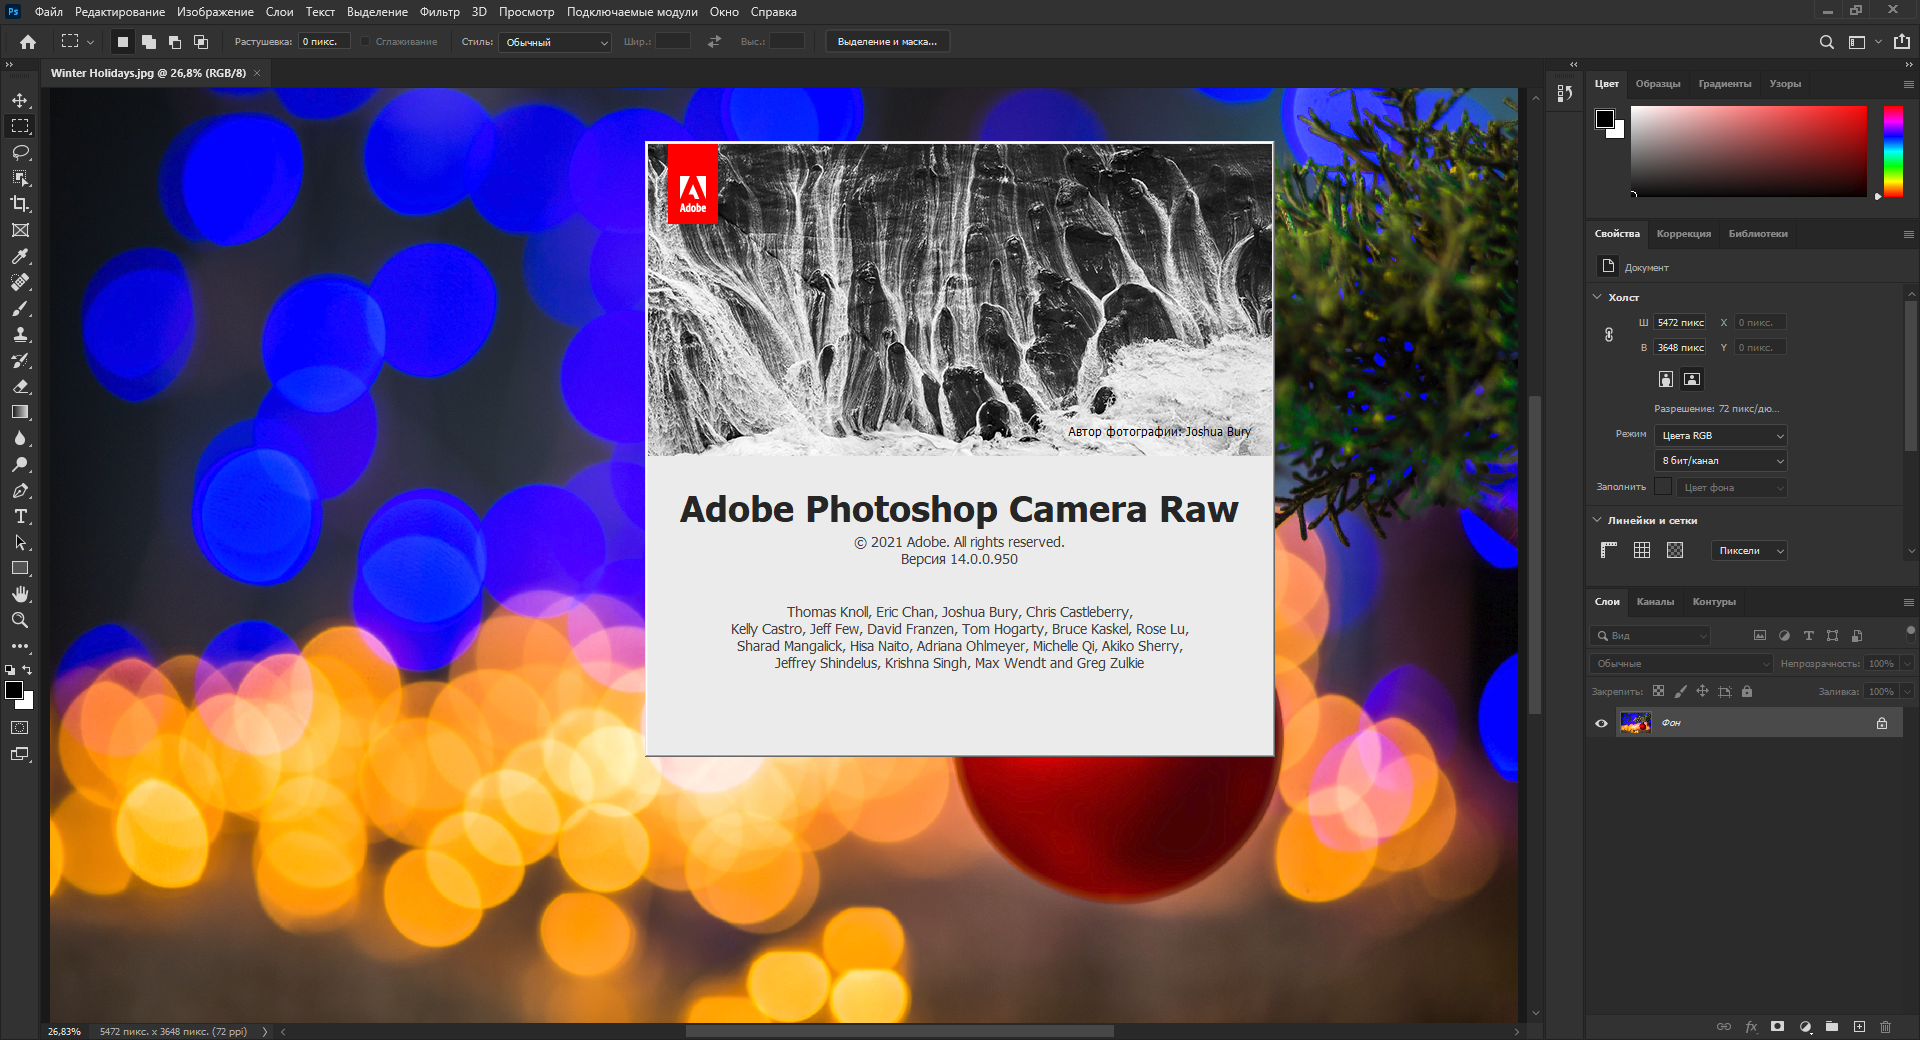 Adobe Photoshop 2021 22.5.3.561 (x64) RePack by SanLex [Multi/Ru]